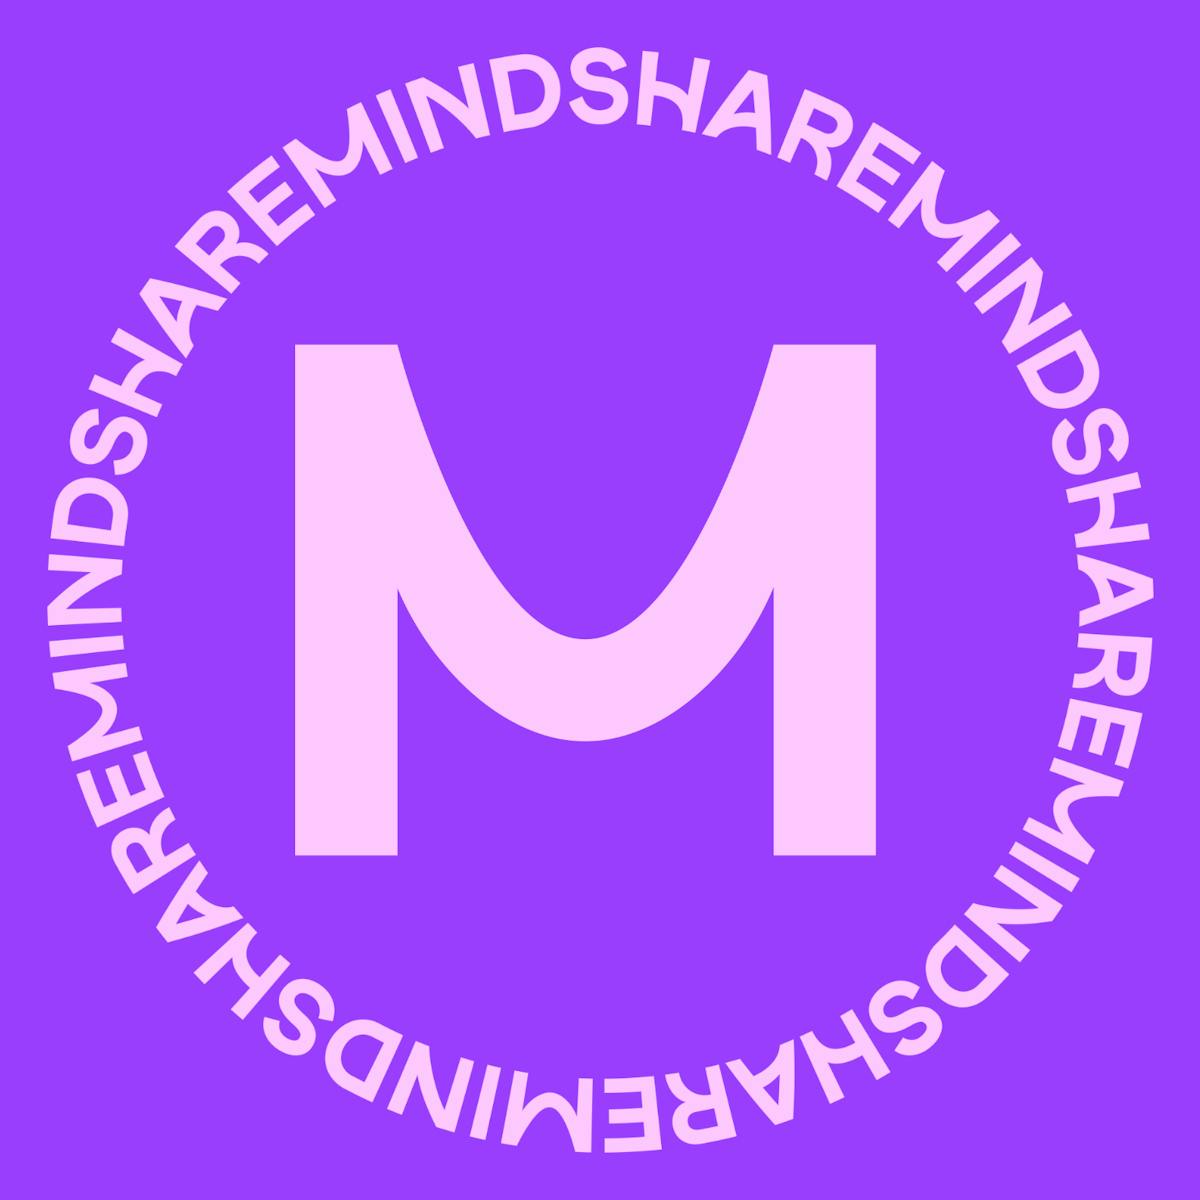 Hvad Z gør i dag, gør vi i morgen - Huddle podcast Mindshare - RadioPlay